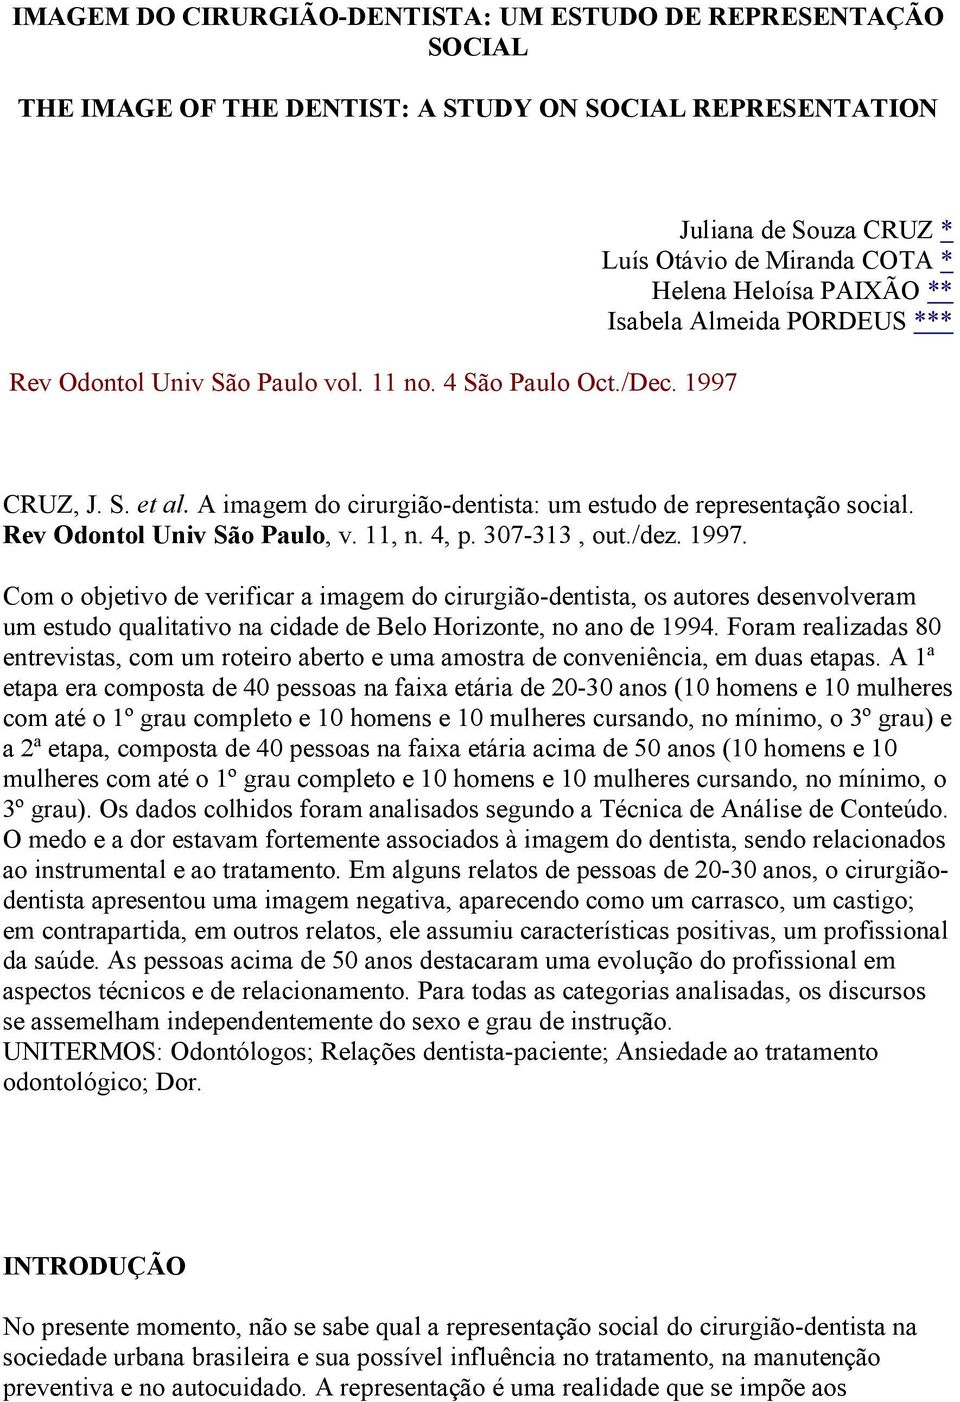 Rev Odontol Univ São Paulo, v. 11, n. 4, p. 307-313, out./dez. 1997.